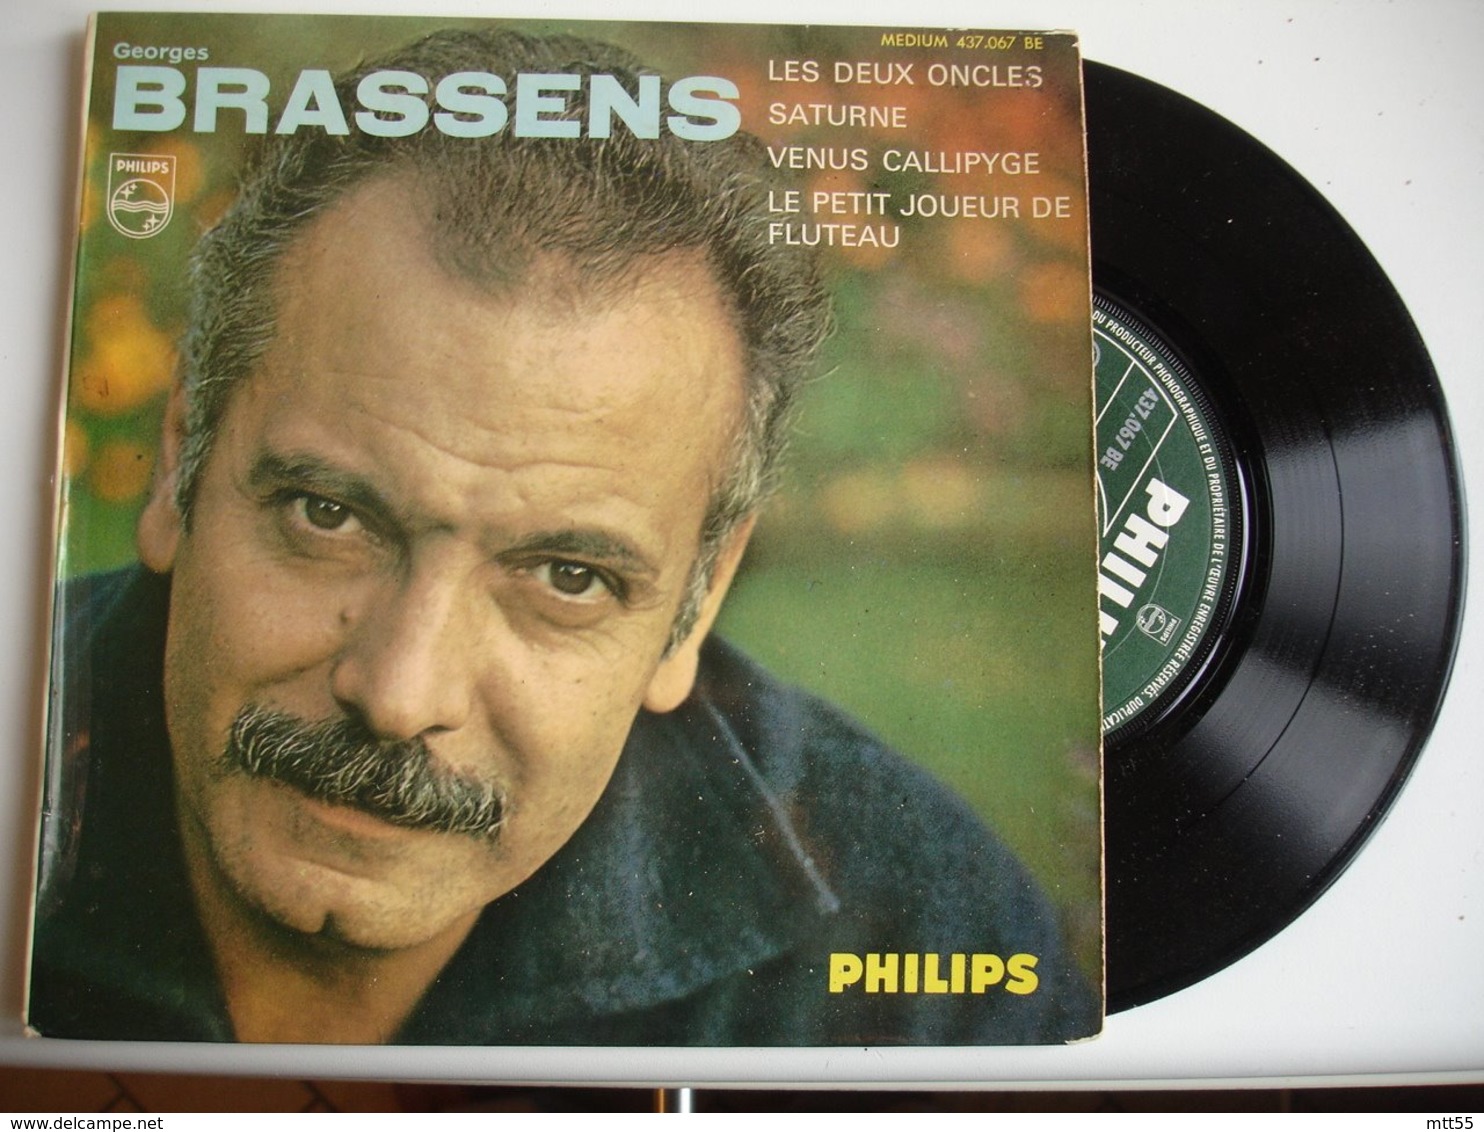 Georges Brassens Lot 3 Disque Vinyle 45 Tours T 2 Oncles Le Cocu - 45 T - Maxi-Single